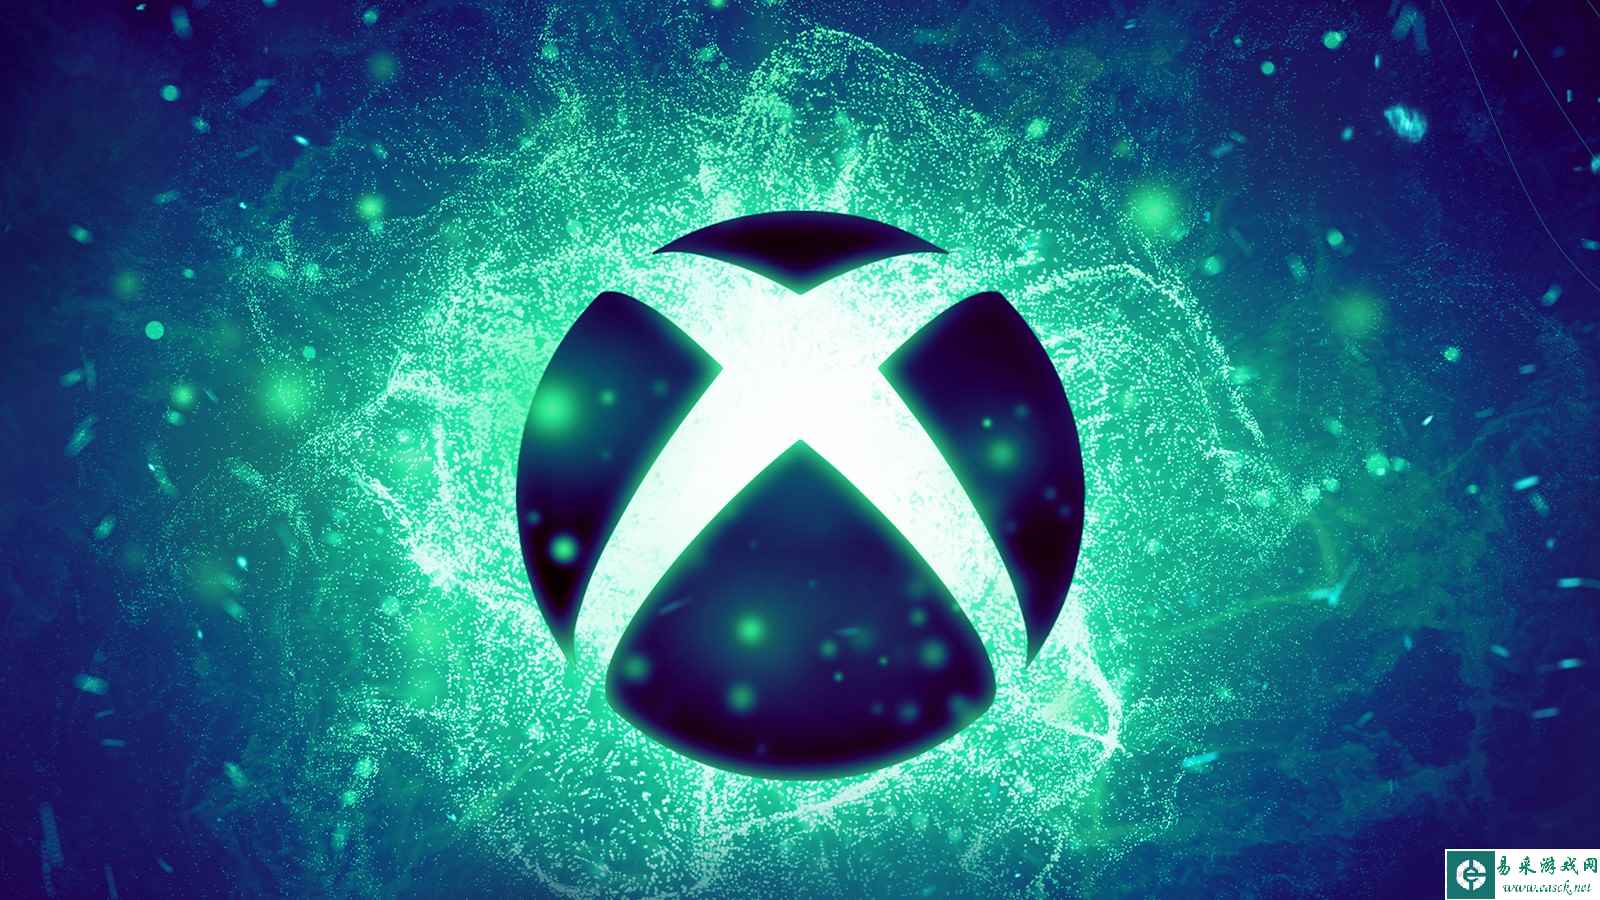 曝微软筹划2026年发布新Xbox 旨在先发制人